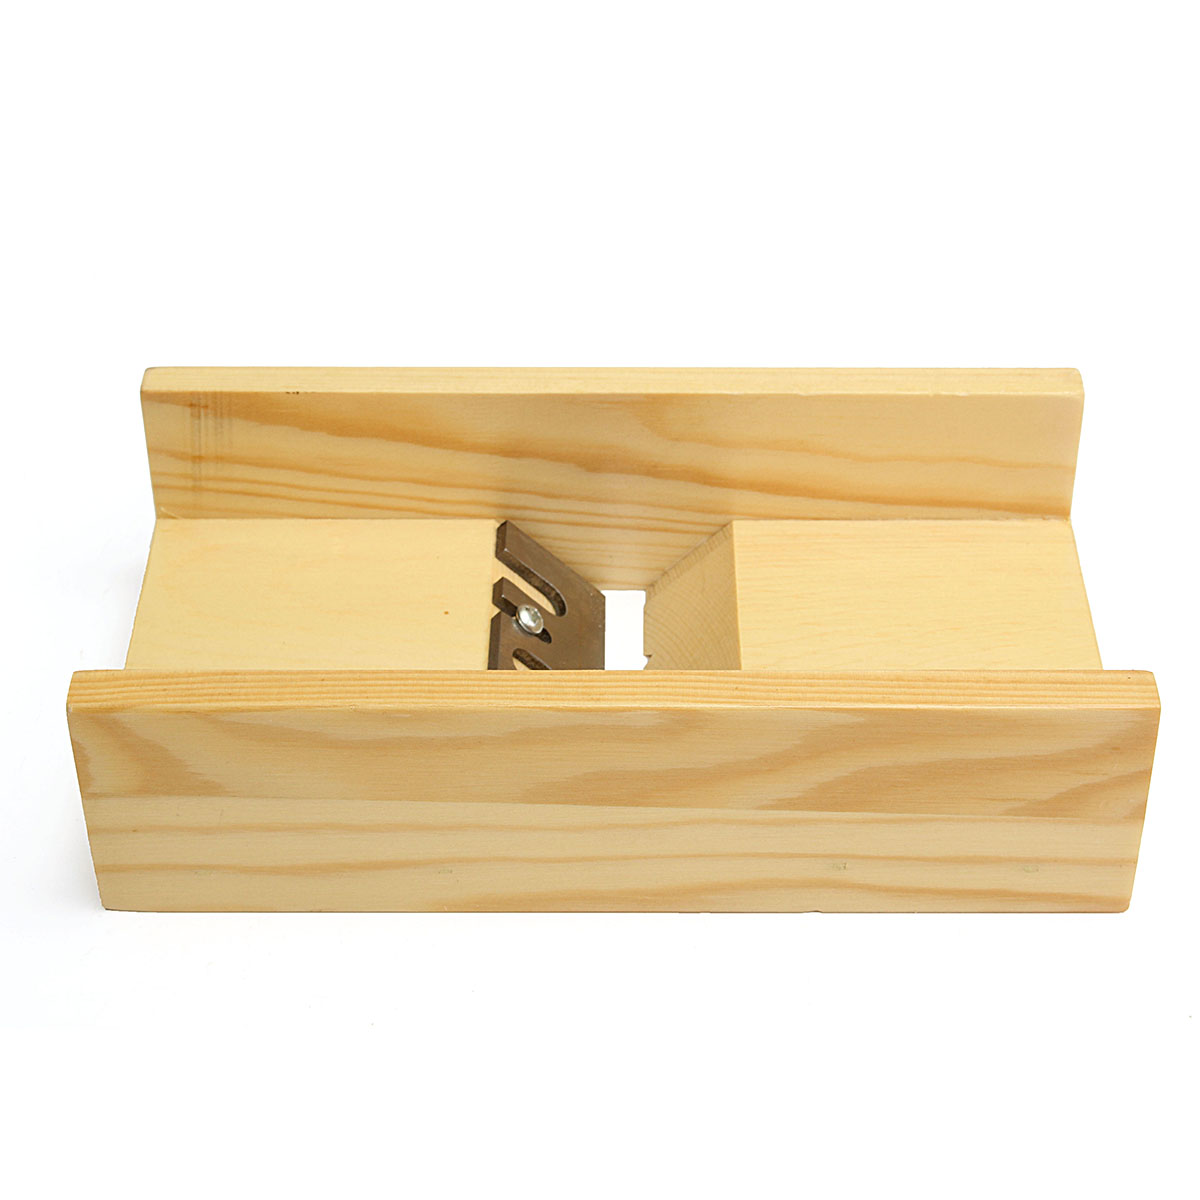 Wooden-Beveler-Planer-Sharp-Blade-Handmade-Soap-Loaf-Mold-Cutter-for-DIY-Craft-Making-Tool-1454770